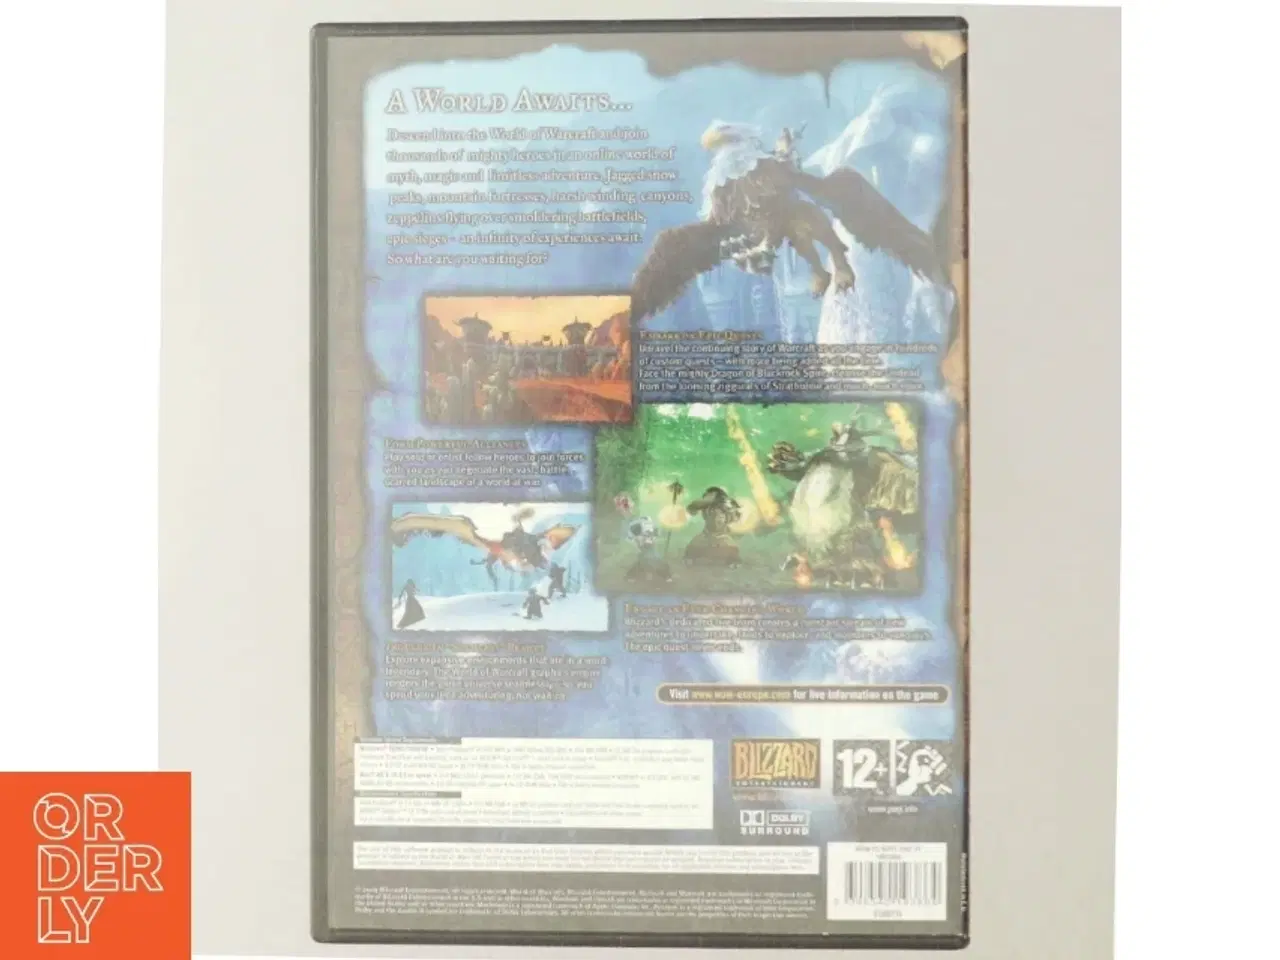 Billede 3 - World of Warcraft PC/MAC CD-ROM spil fra Blizzard